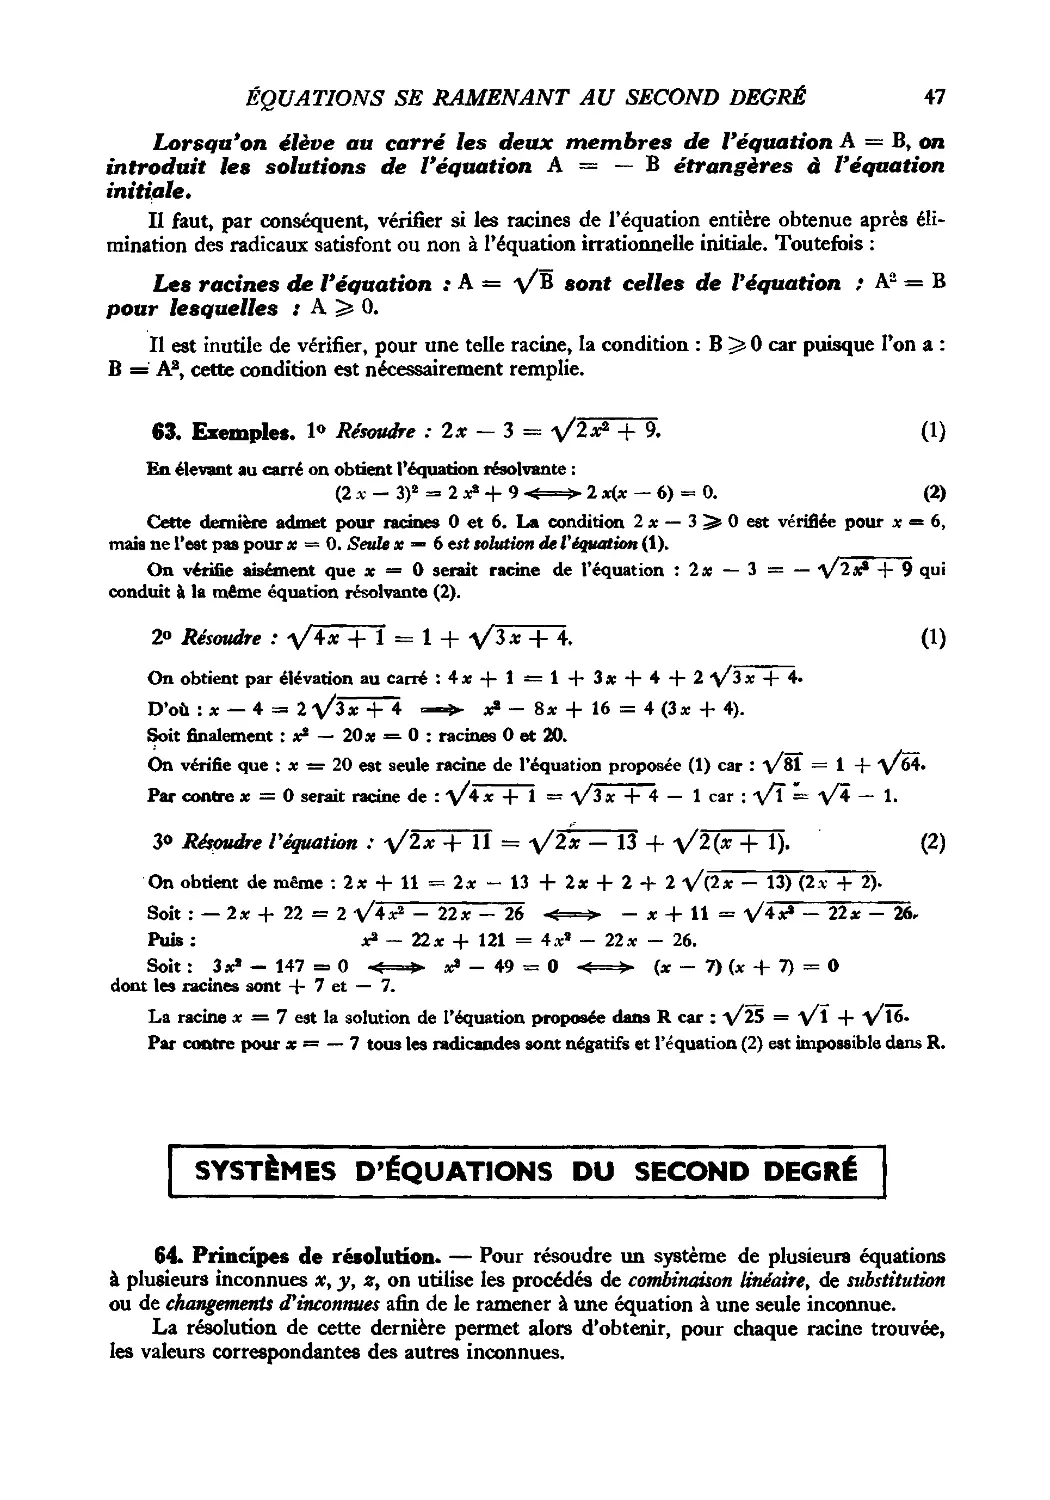 63. Exemples
Systèmes d’équations du second degré